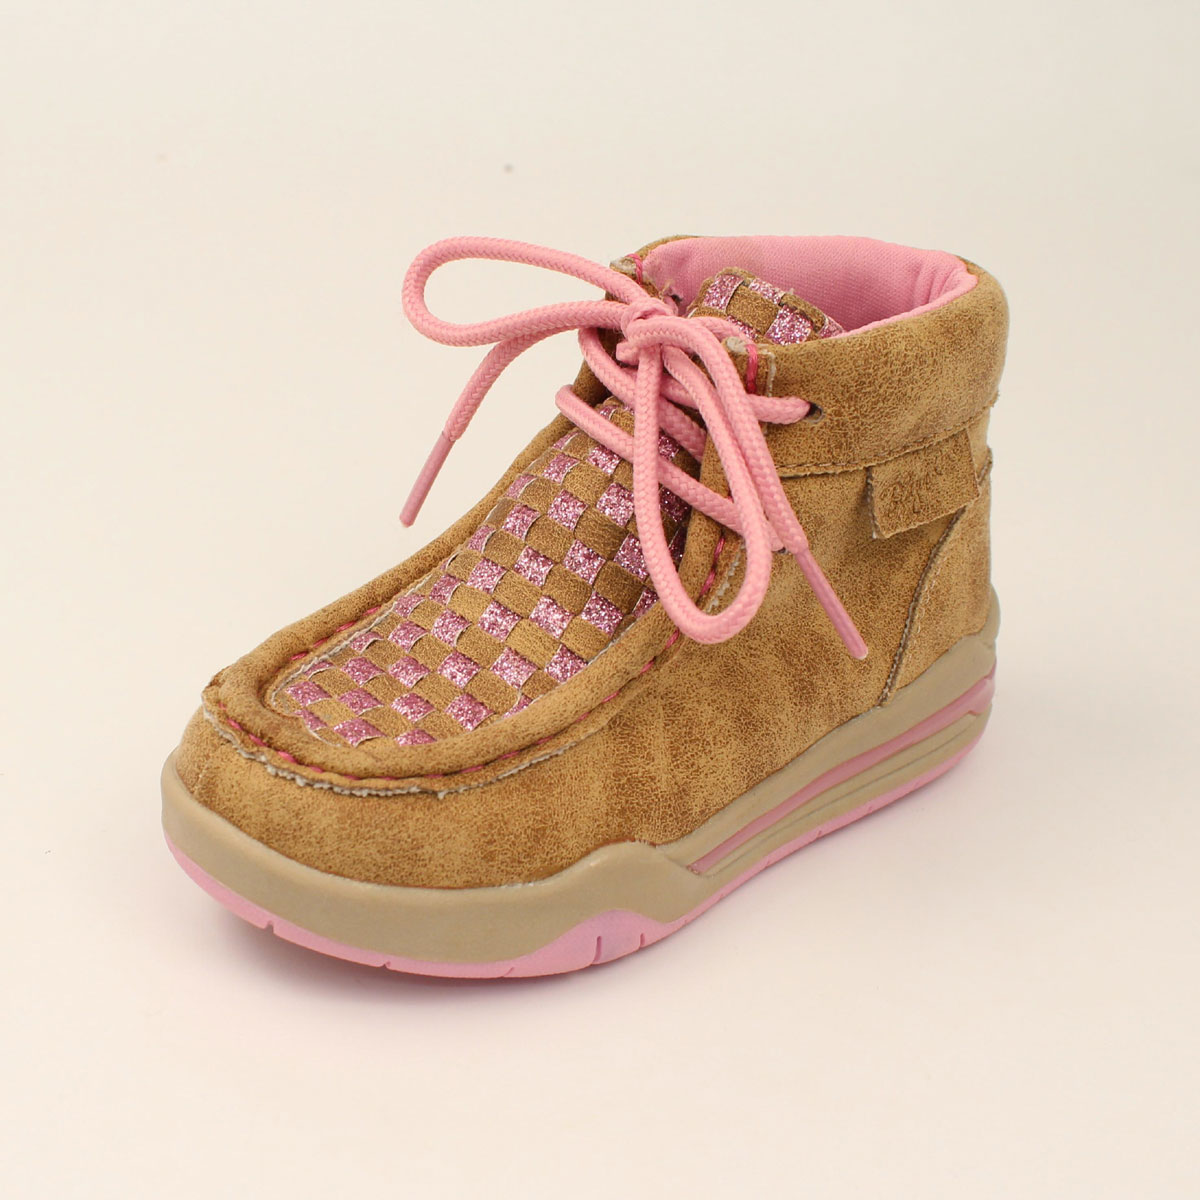 Blazin Roxx Toddler Girl's Lauren Casual Shoes - Tan/Pink